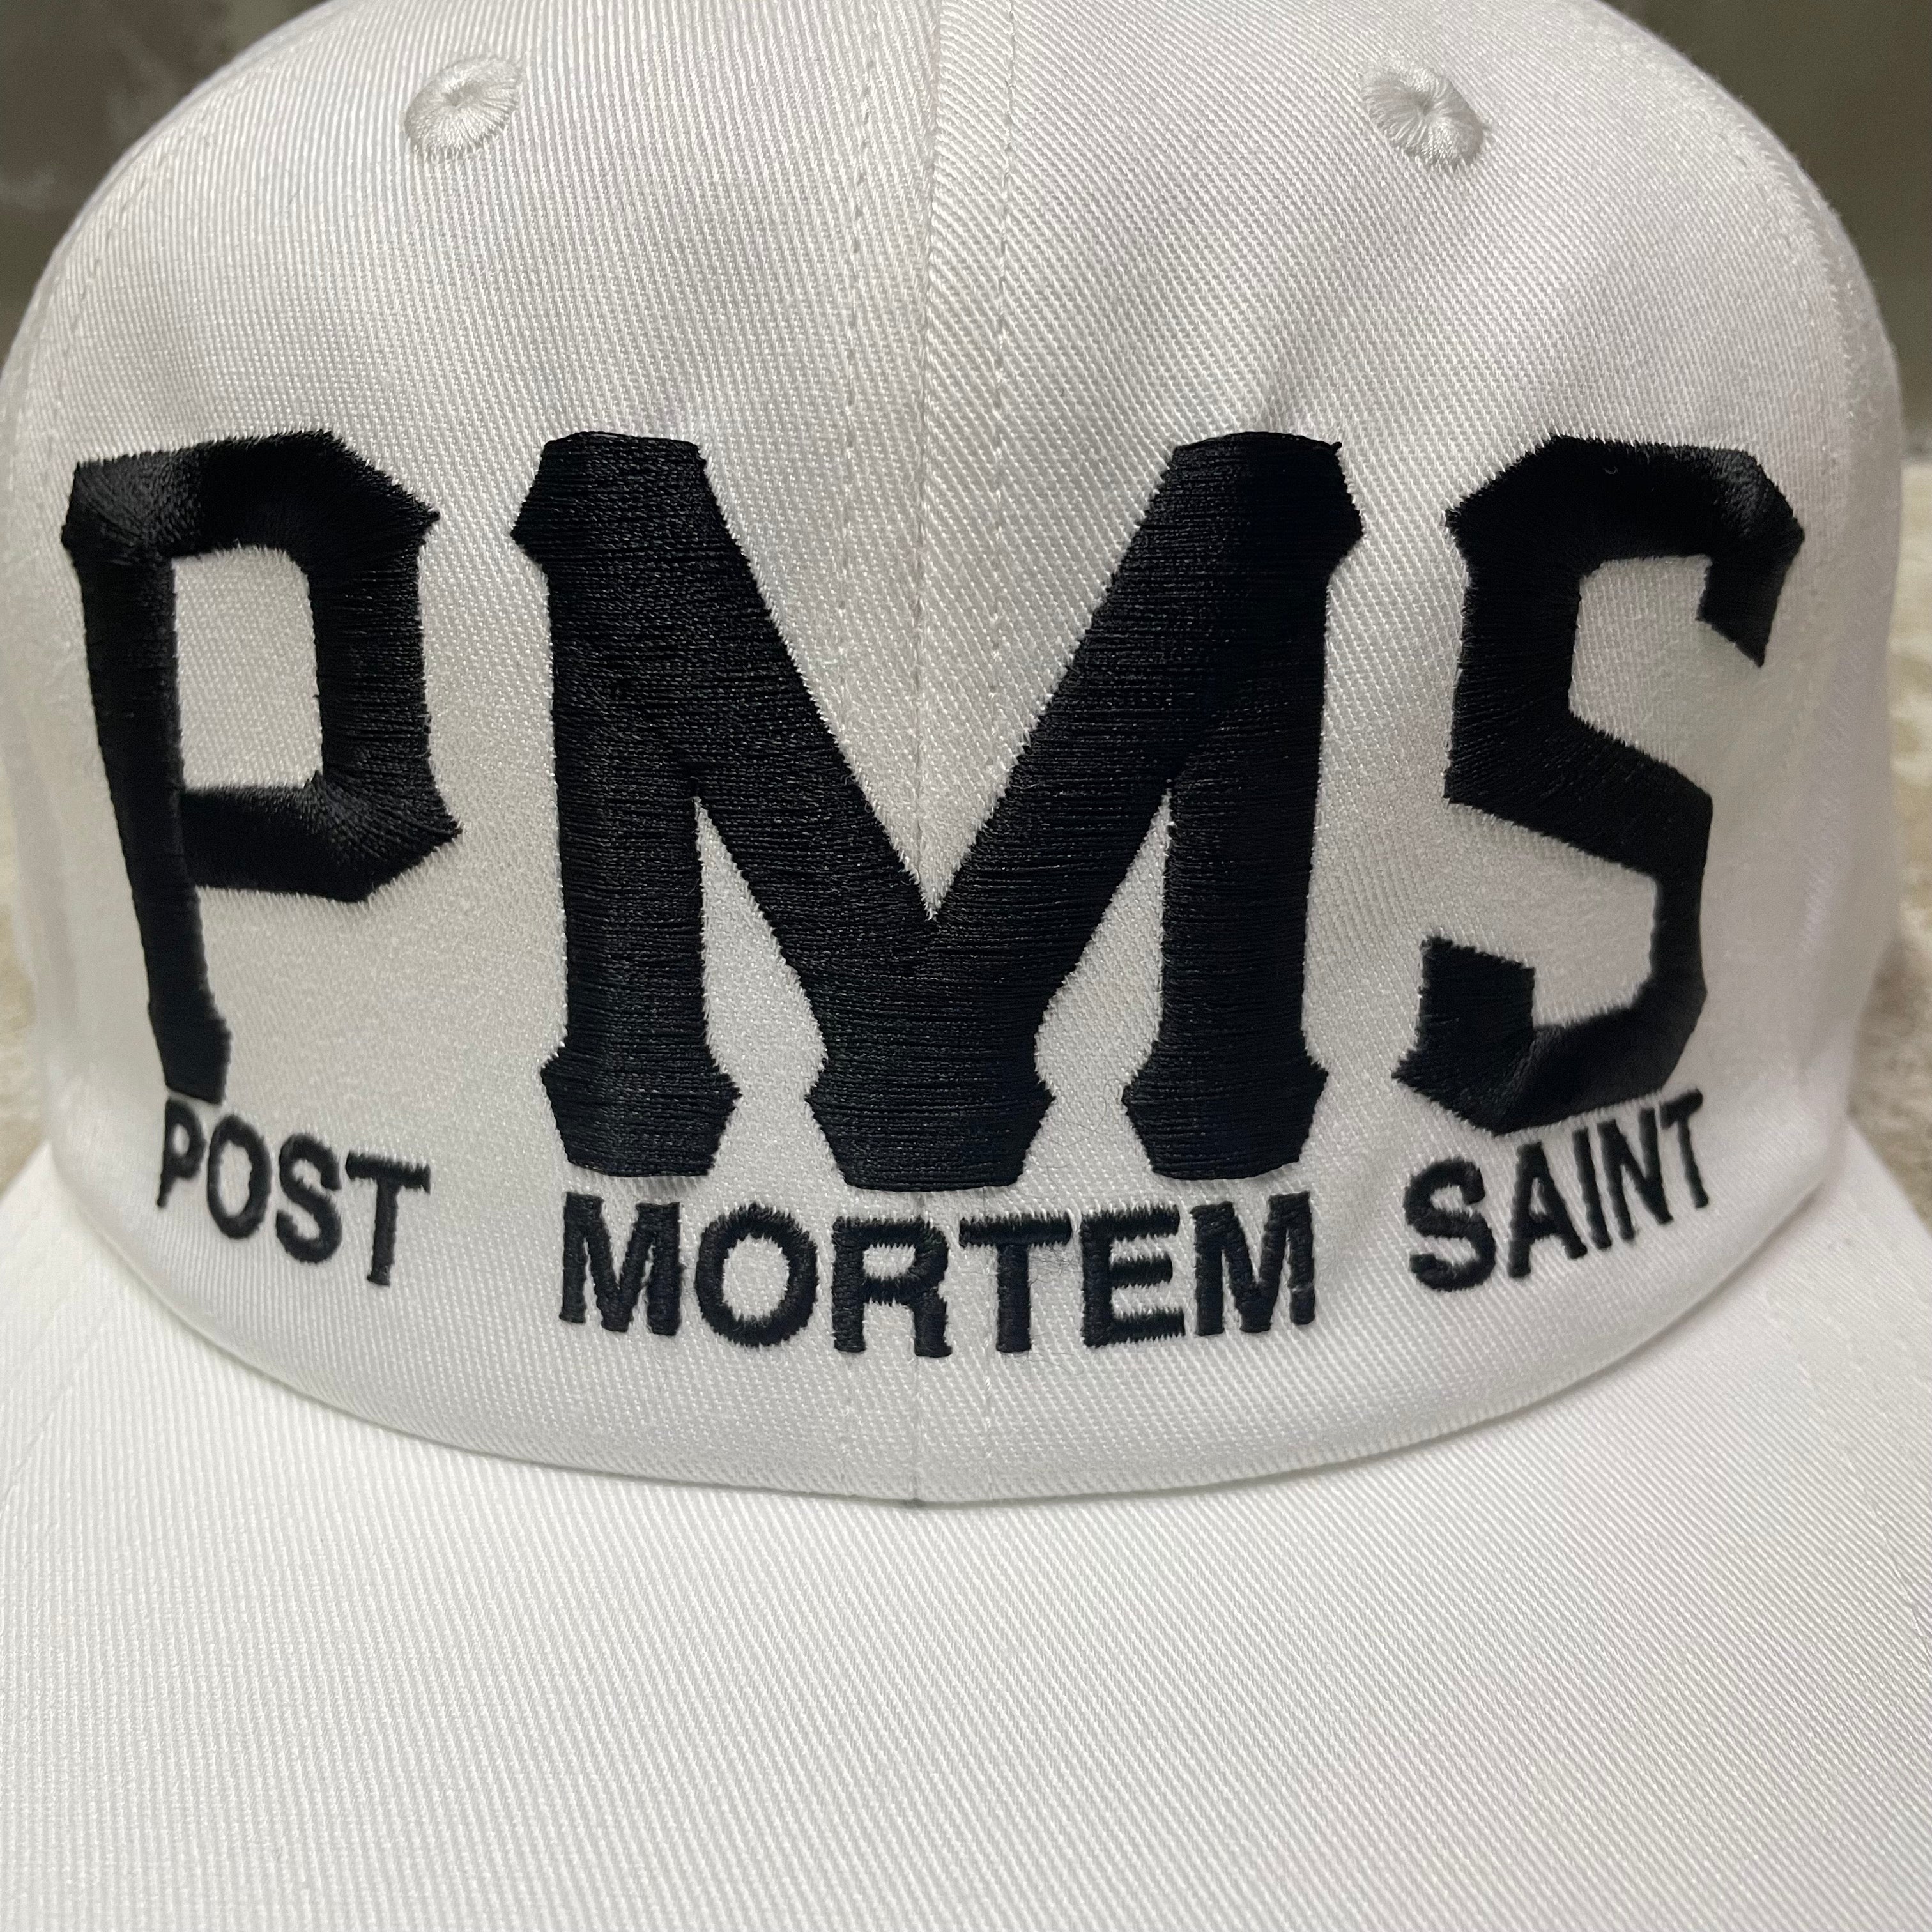 SAINT MICHAEL CAP " PMS " / Saint Michael